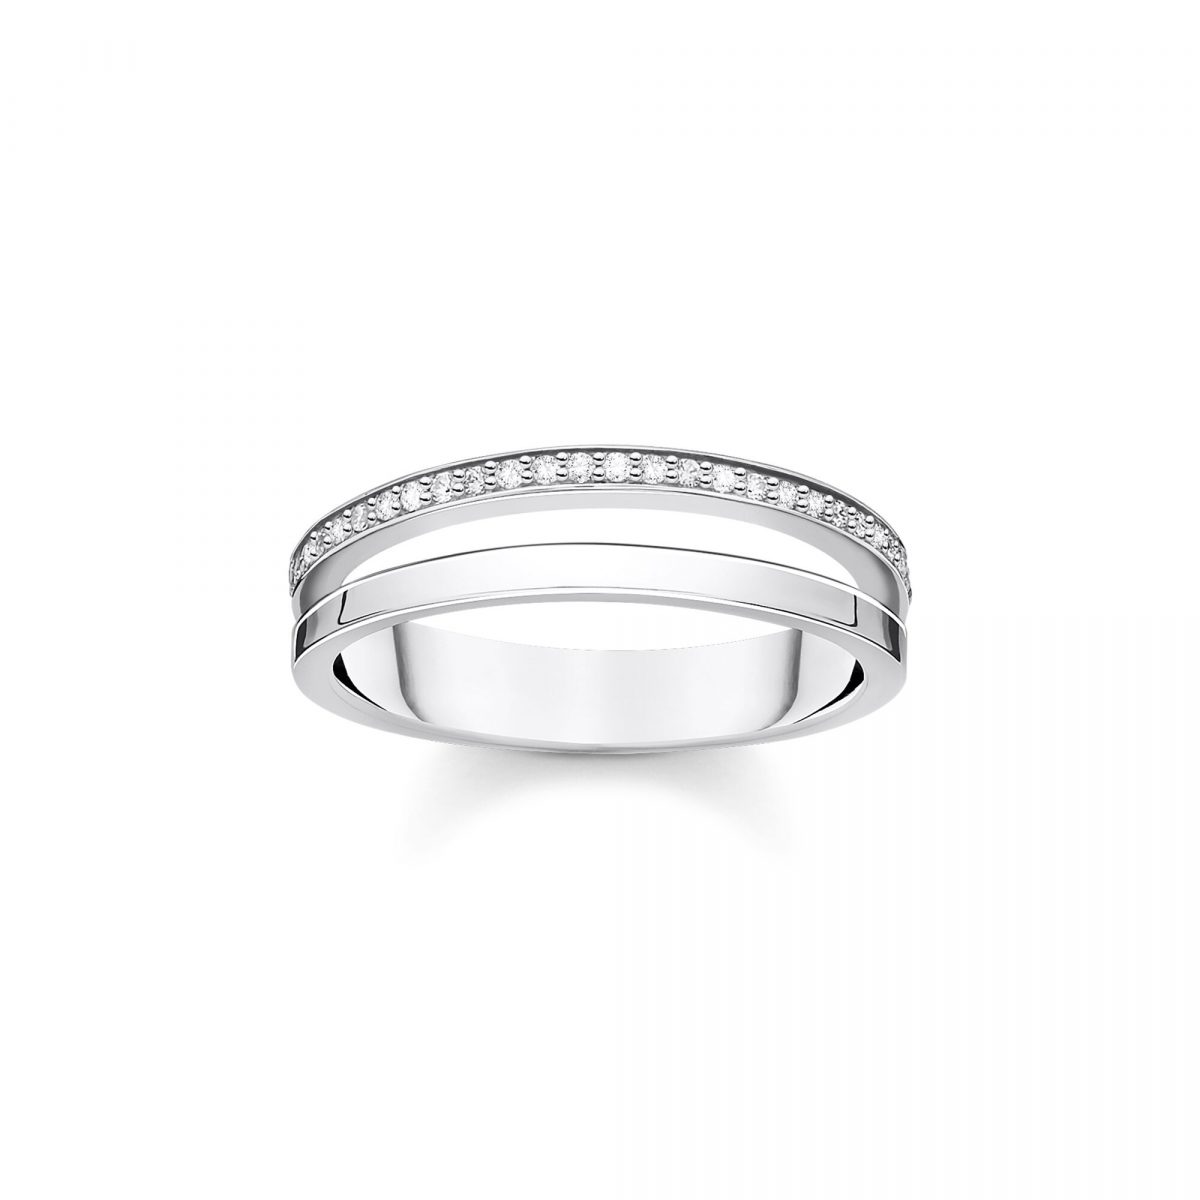 Thomas Sabo Double Ring with White Stones Size 54 (TR2316-051-14-54)